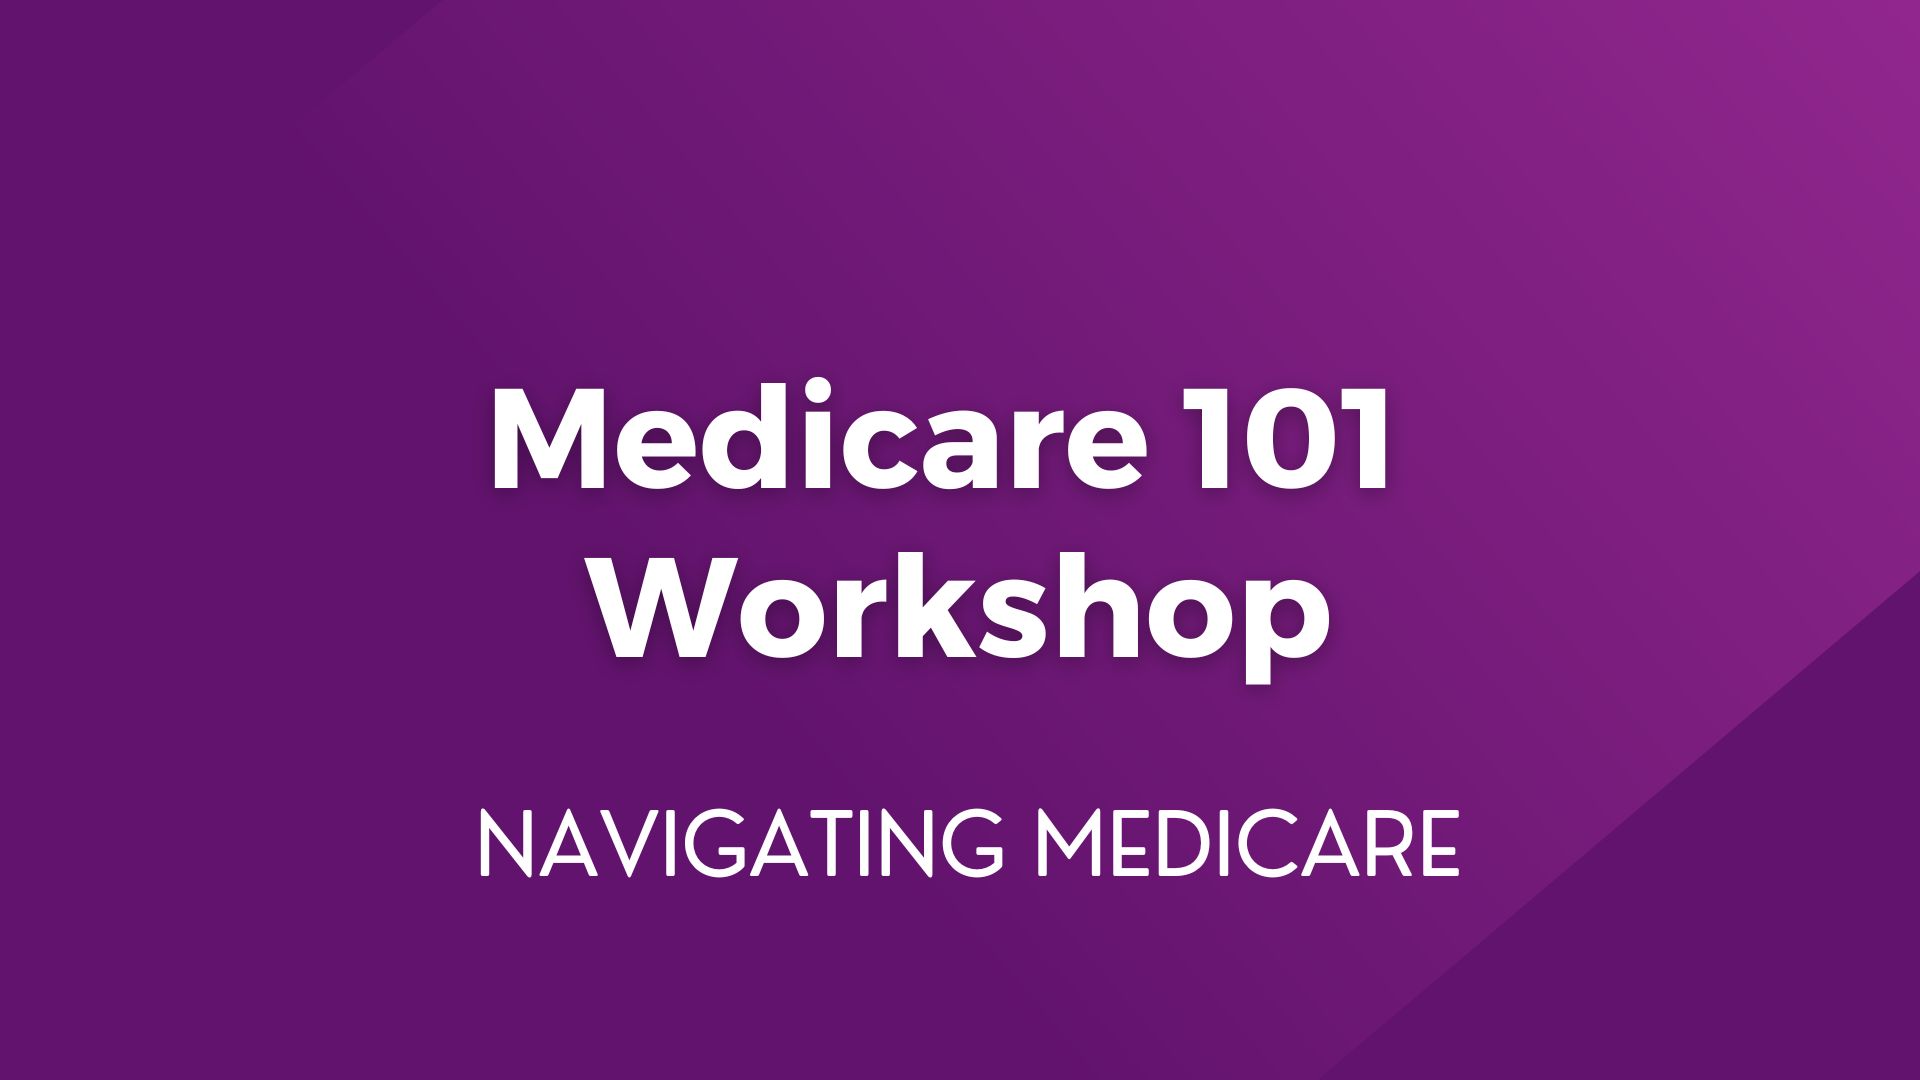 Medicare 101 Workshop – March 19